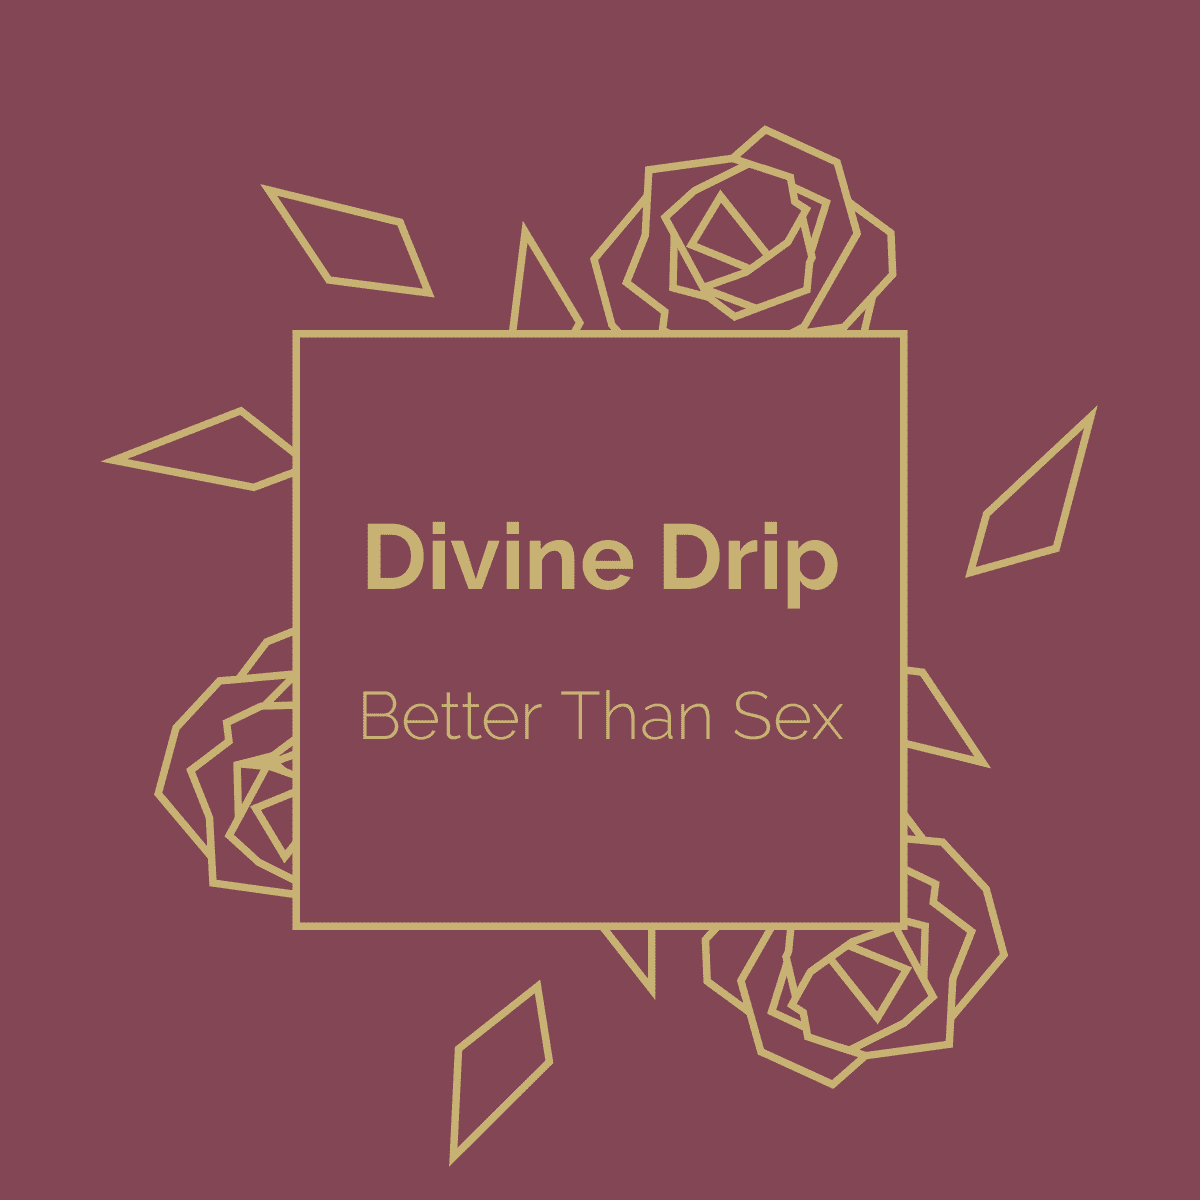 Divine Drip Hard